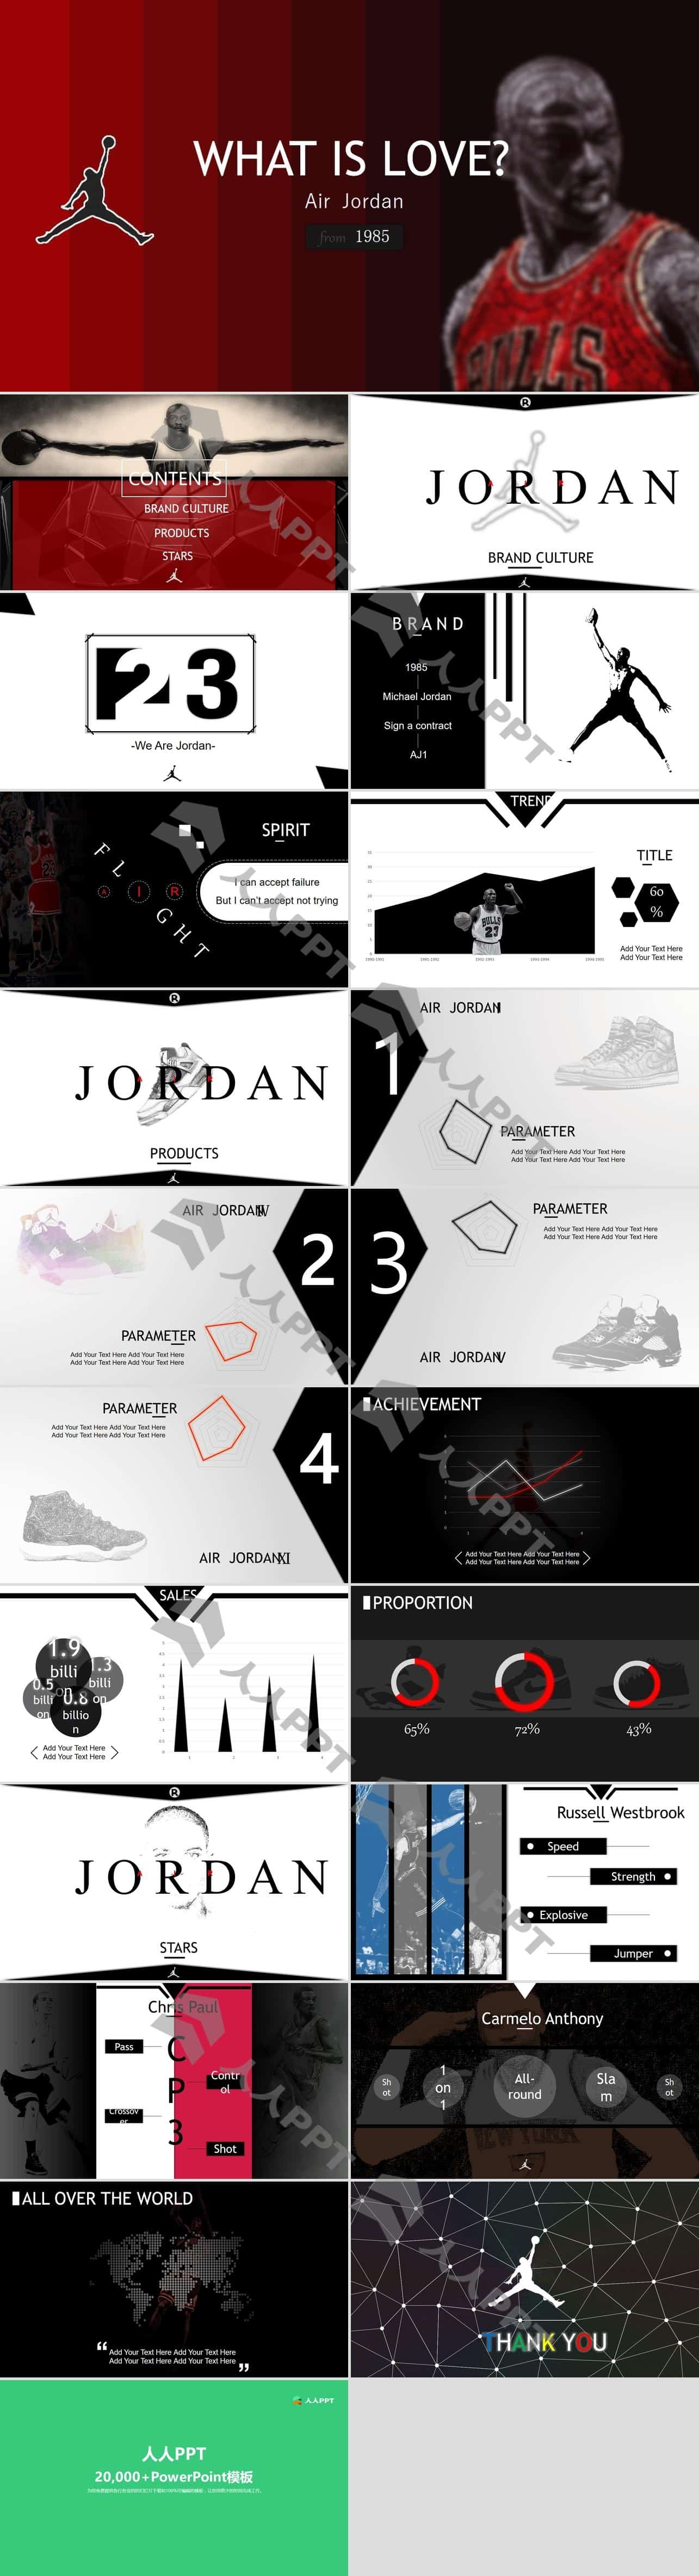 篮球运动品牌Jordan乔丹PPT模板长图